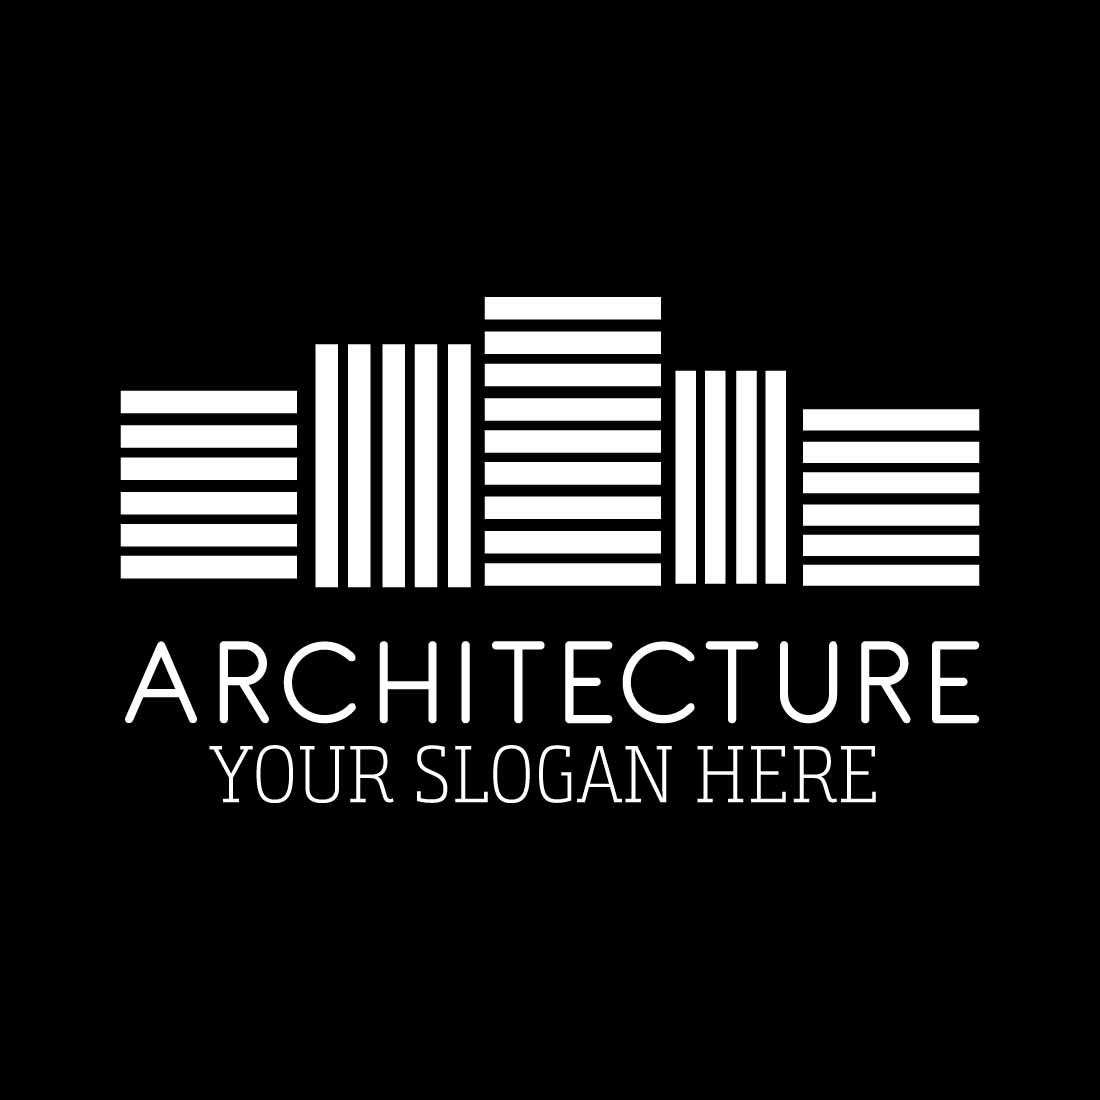 Architecture Logo Design preview image.